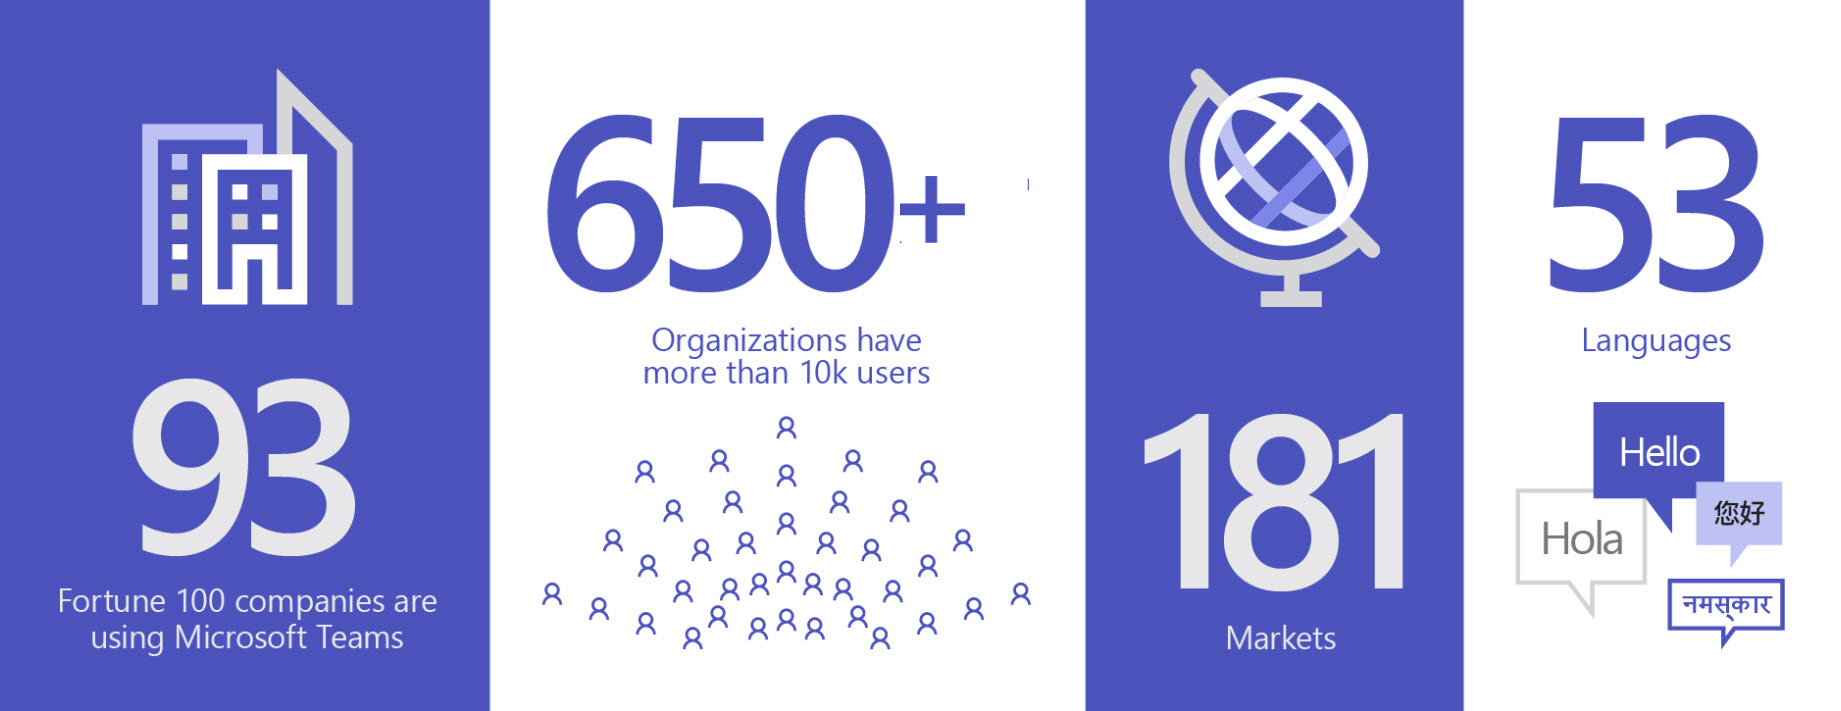 Imagen en la que se muestran 93 organizaciones que usan Teams; más de 650 empresas tienen más de 10,000 usuarios, en 181 mercados y 53 idiomas.